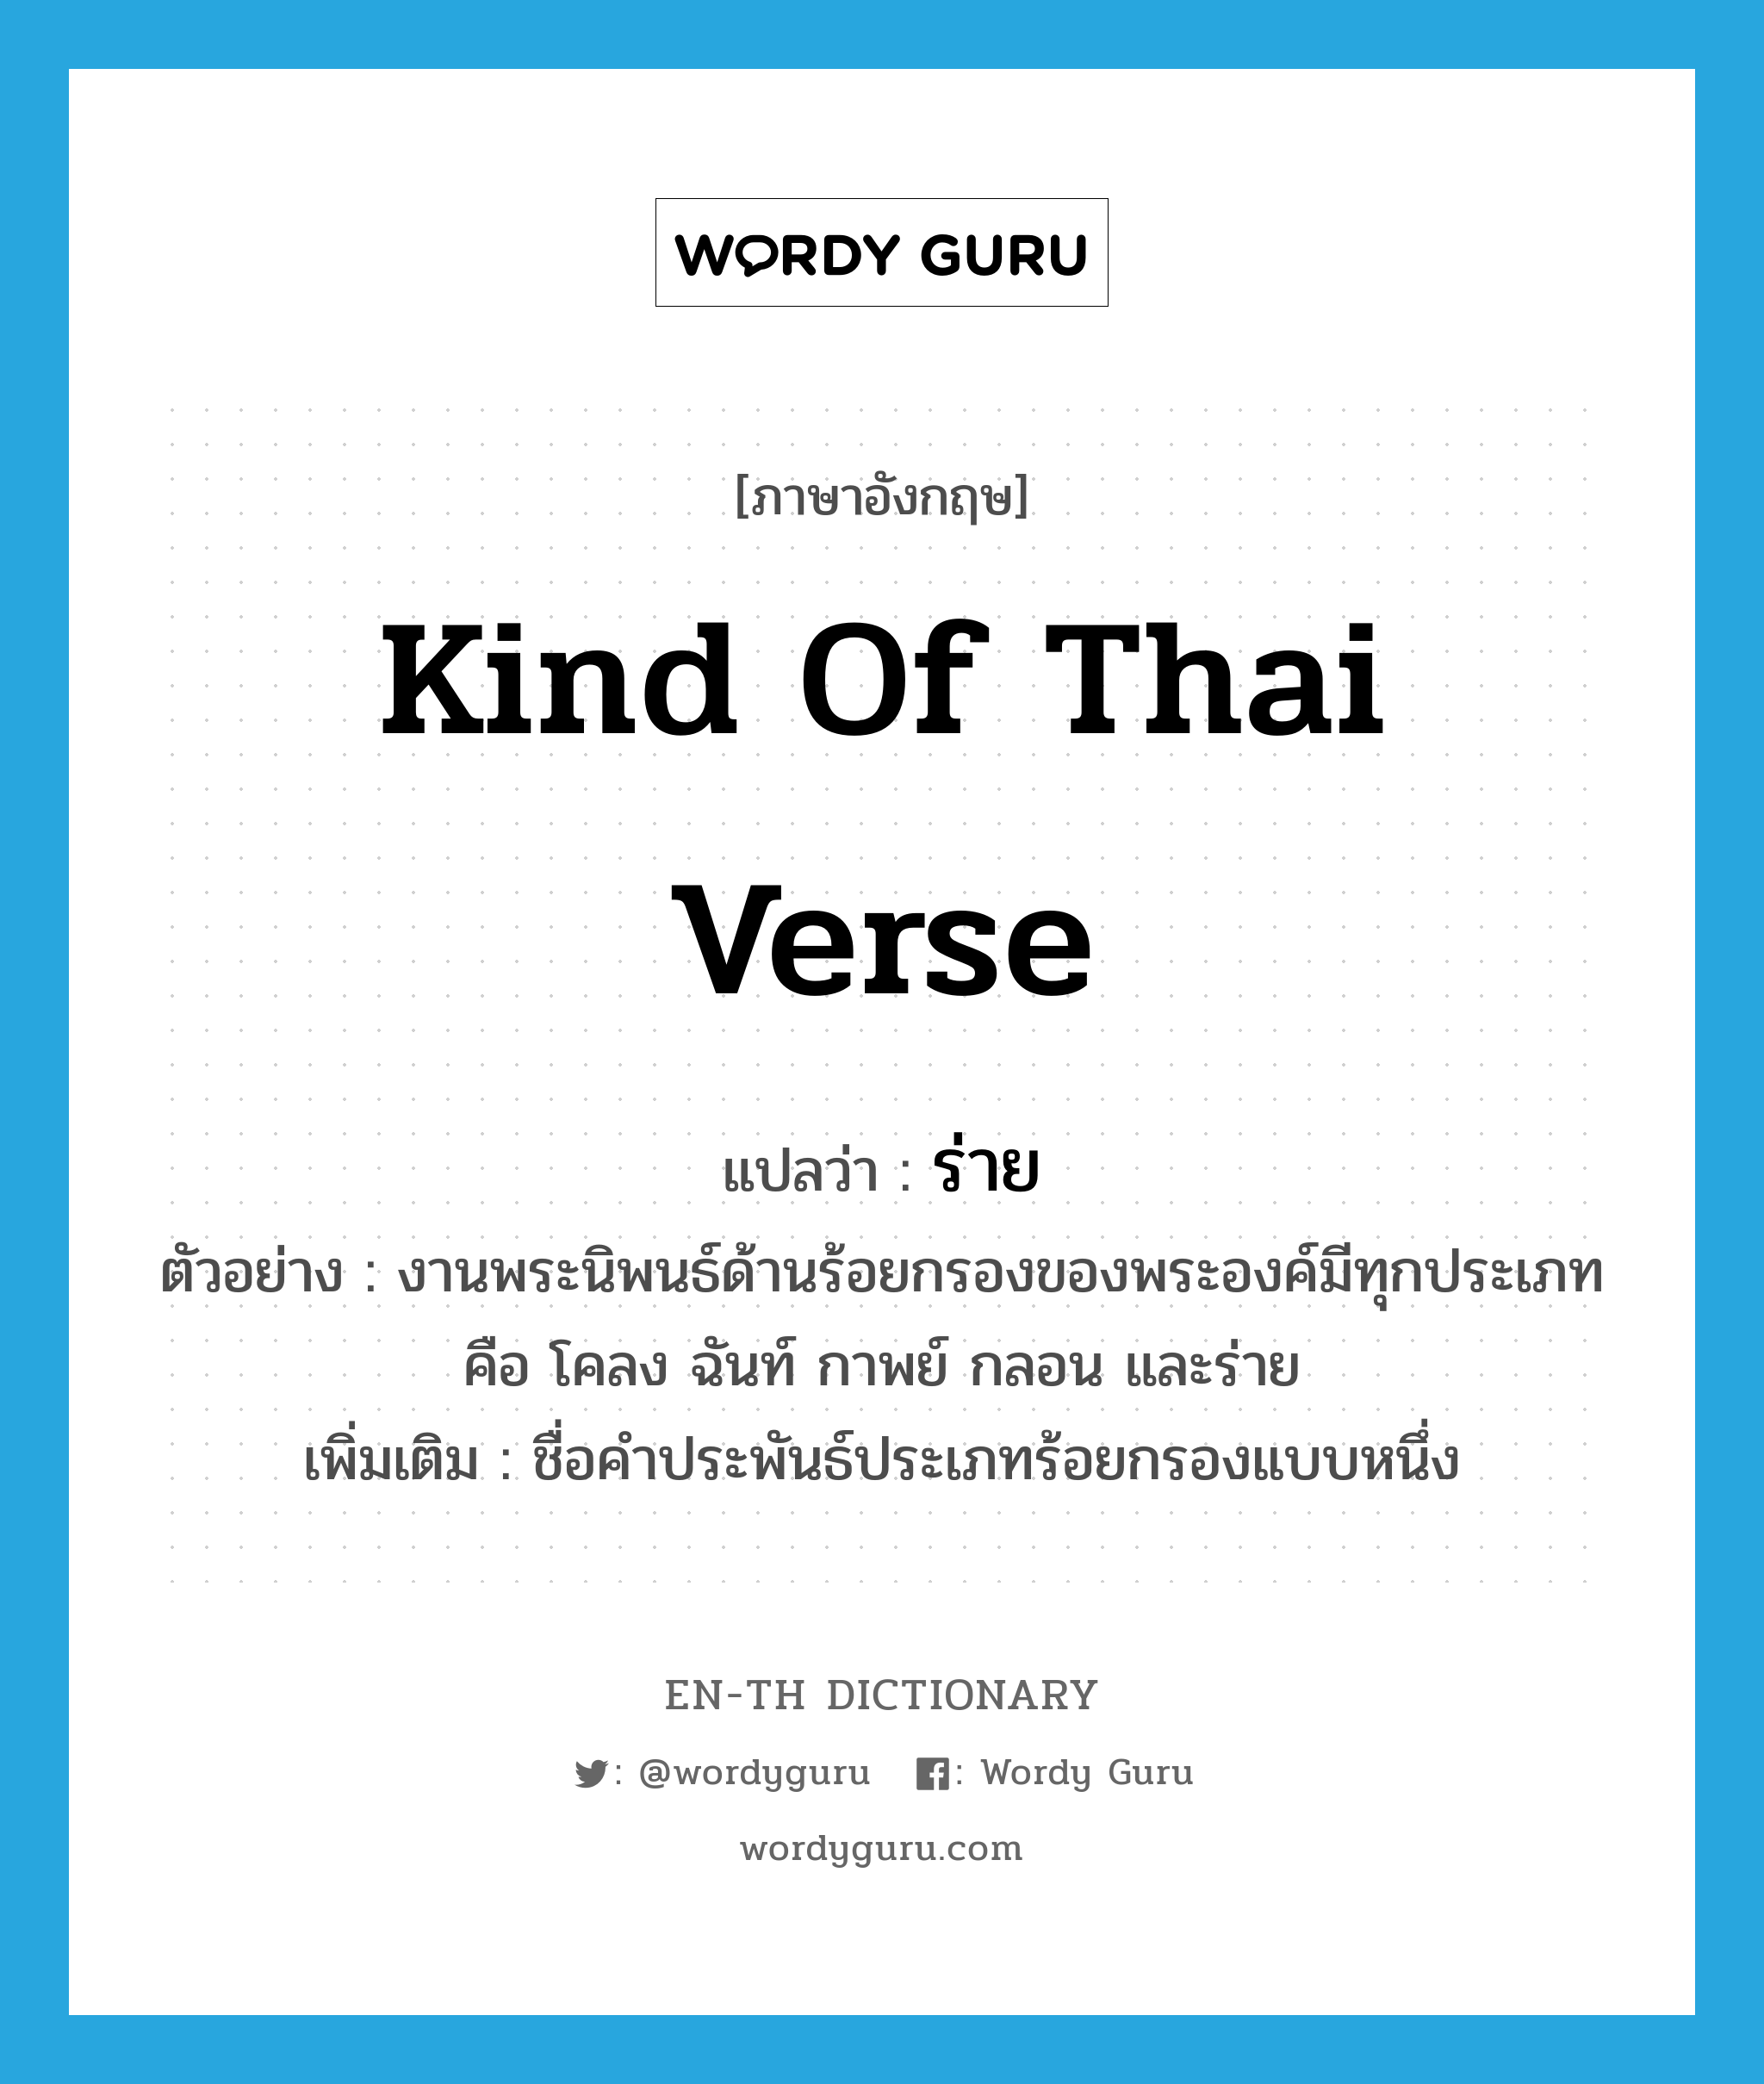 kind of Thai verse แปลว่า?, คำศัพท์ภาษาอังกฤษ kind of Thai verse แปลว่า ร่าย ประเภท N ตัวอย่าง งานพระนิพนธ์ด้านร้อยกรองของพระองค์มีทุกประเภท คือ โคลง ฉันท์ กาพย์ กลอน และร่าย เพิ่มเติม ชื่อคำประพันธ์ประเภทร้อยกรองแบบหนึ่ง หมวด N